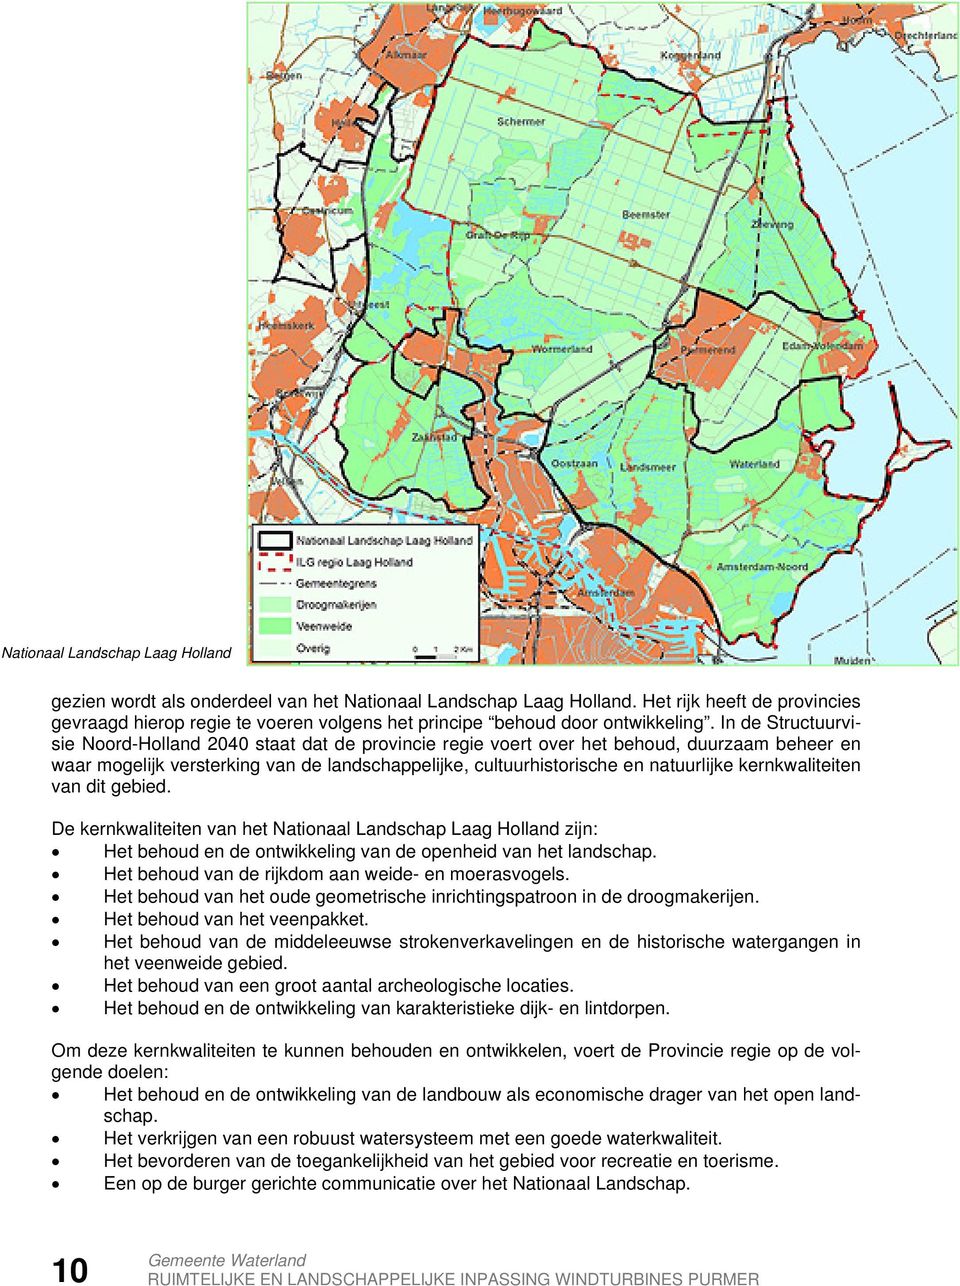 In de Structuurvisie Noord-Holland 2040 staat dat de provincie regie voert over het behoud, duurzaam beheer en waar mogelijk versterking van de landschappelijke, cultuurhistorische en natuurlijke